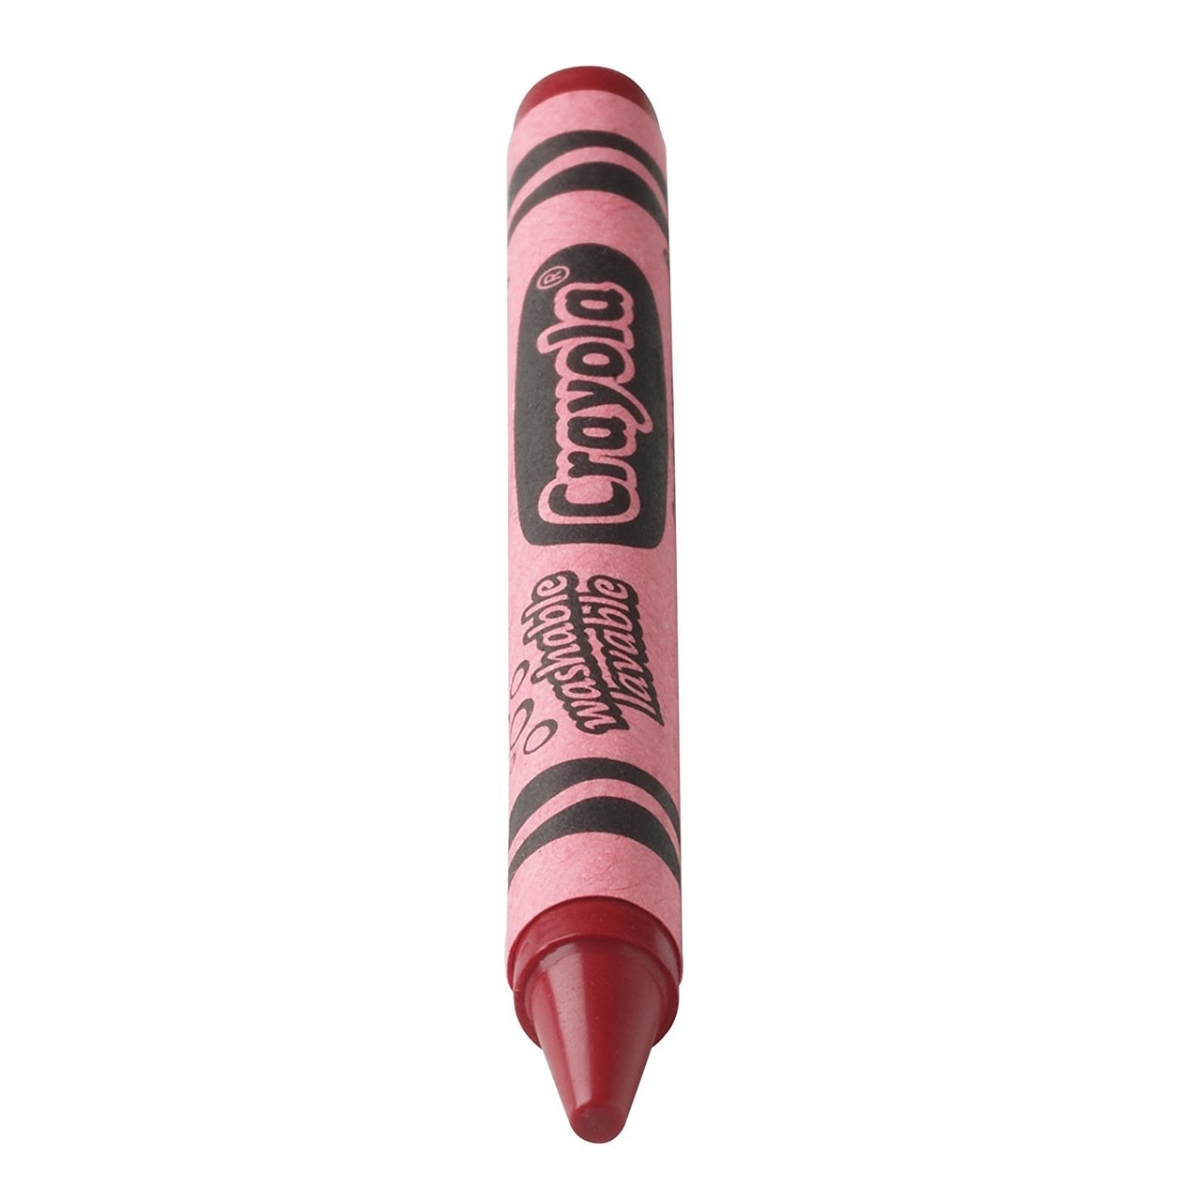 Crayola 30363915 16 Large Washable Crayons